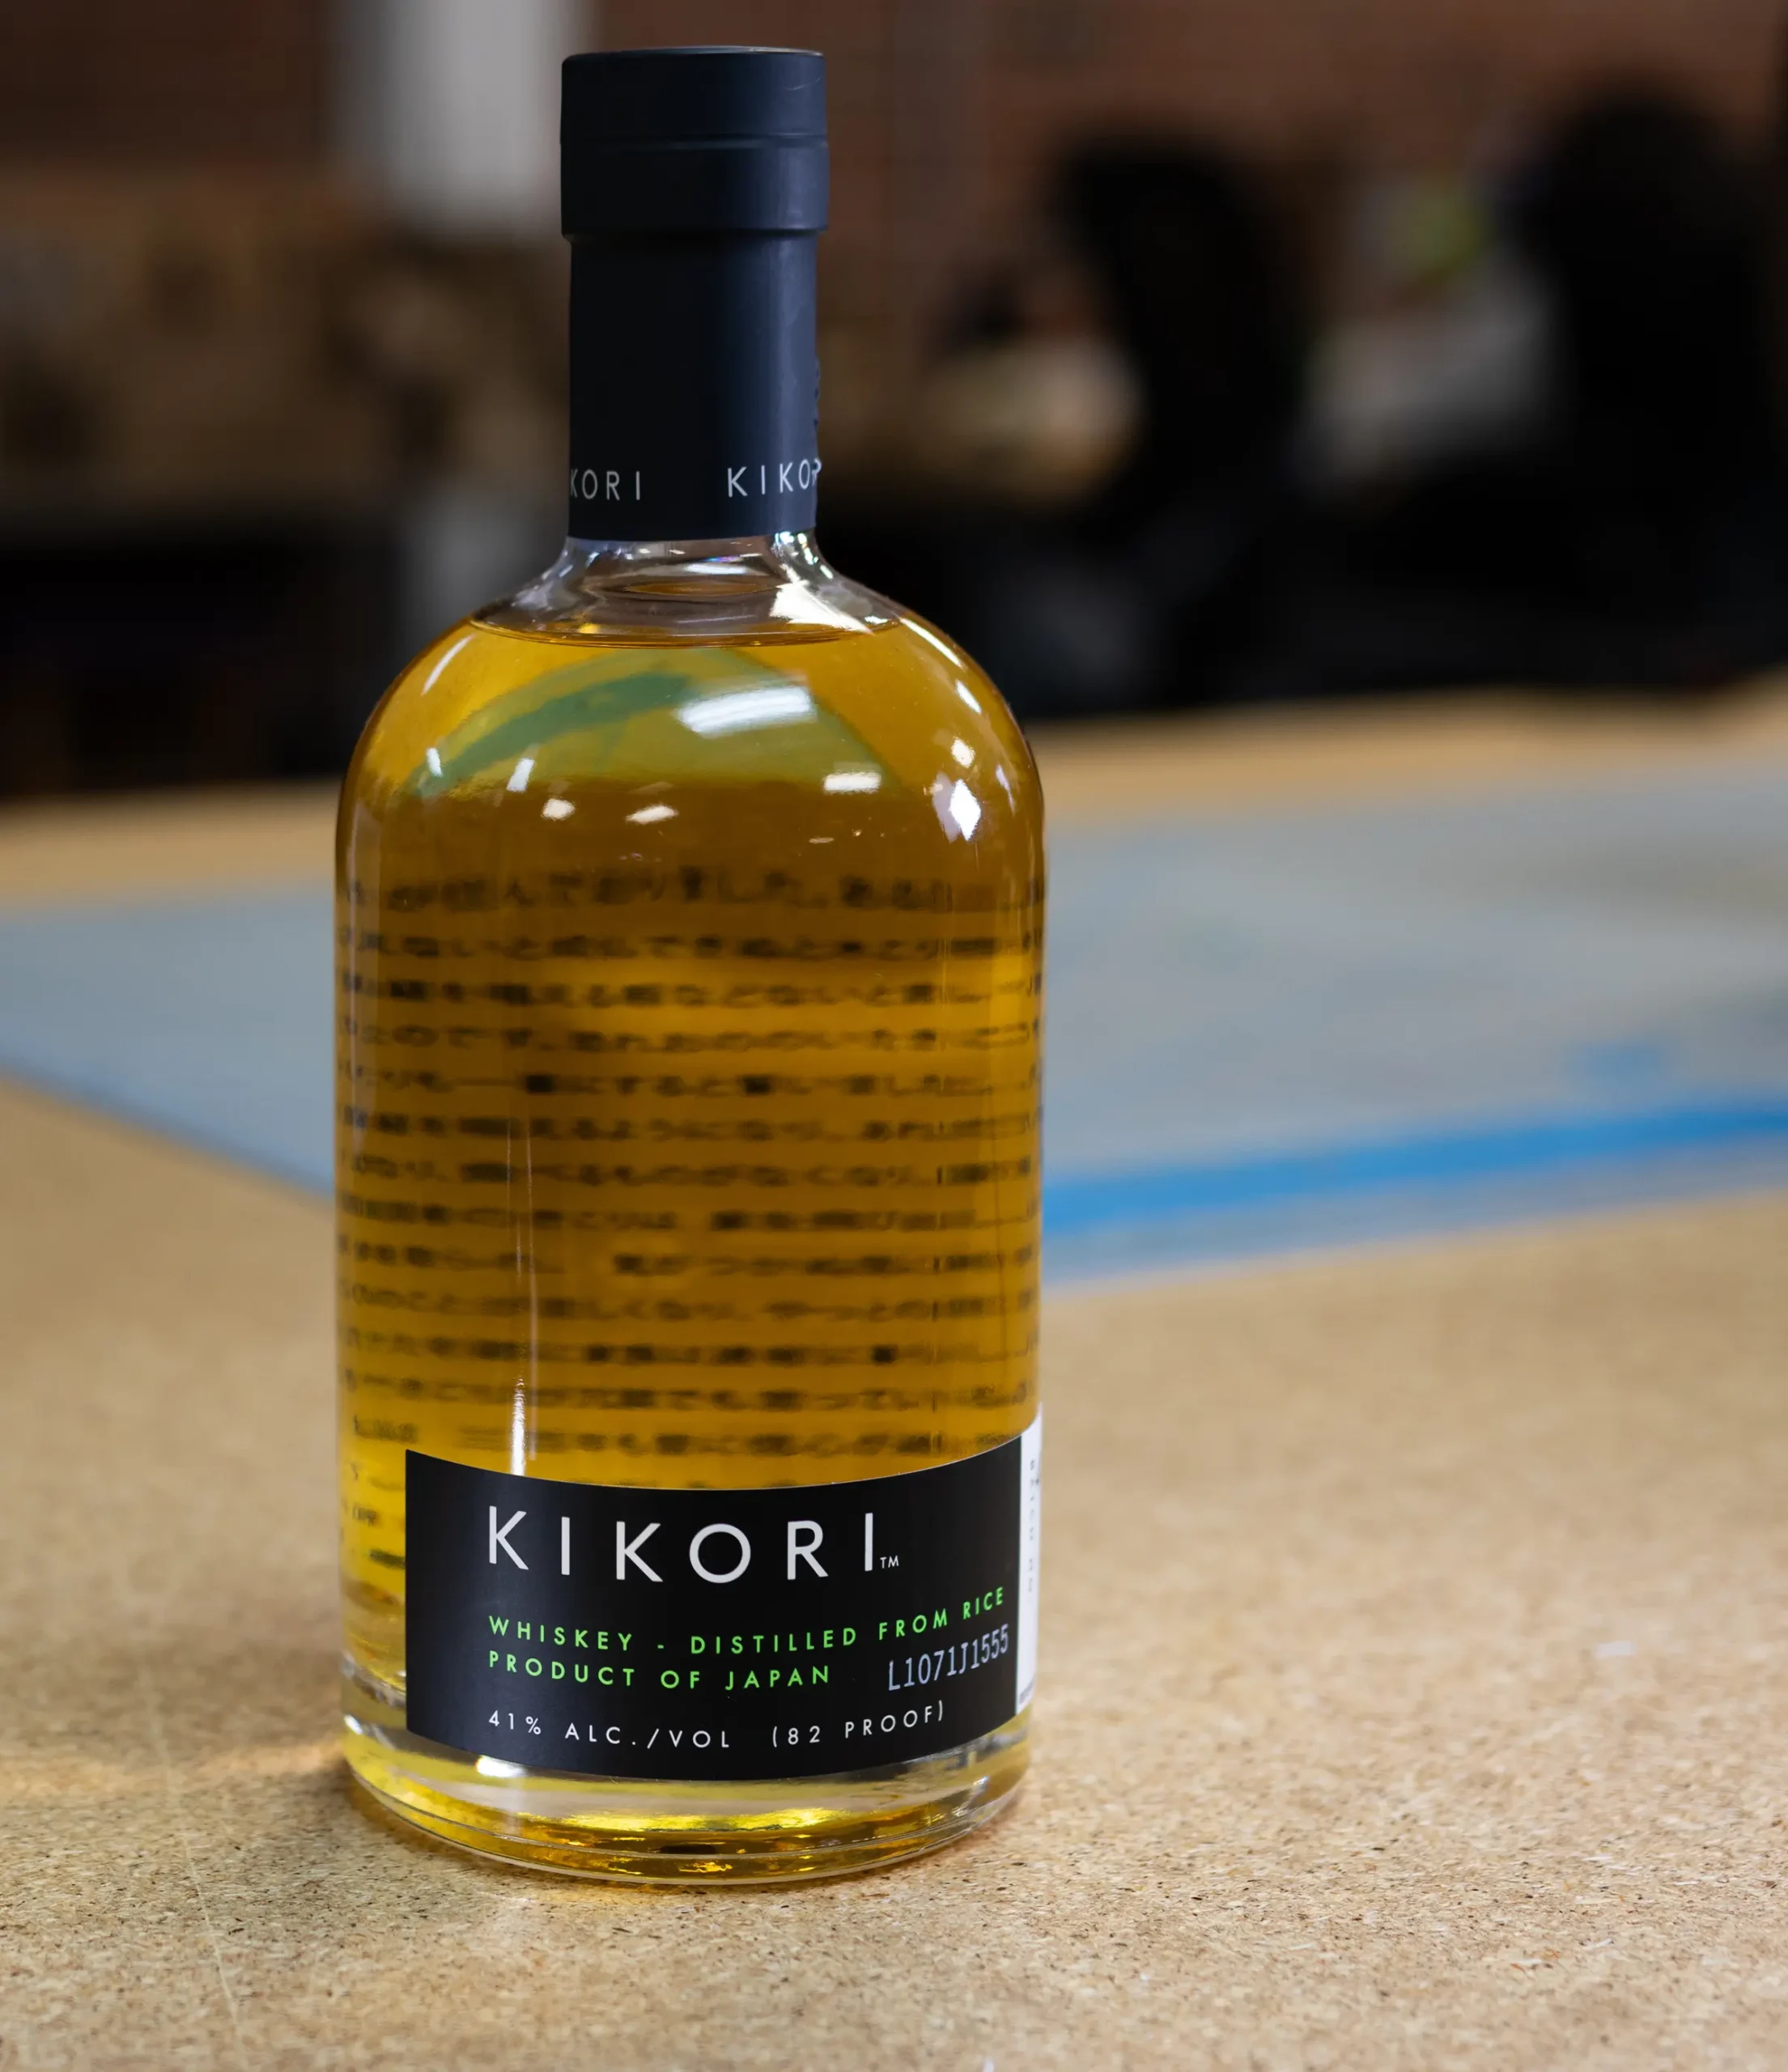 Bottle of Kikori Whiskey